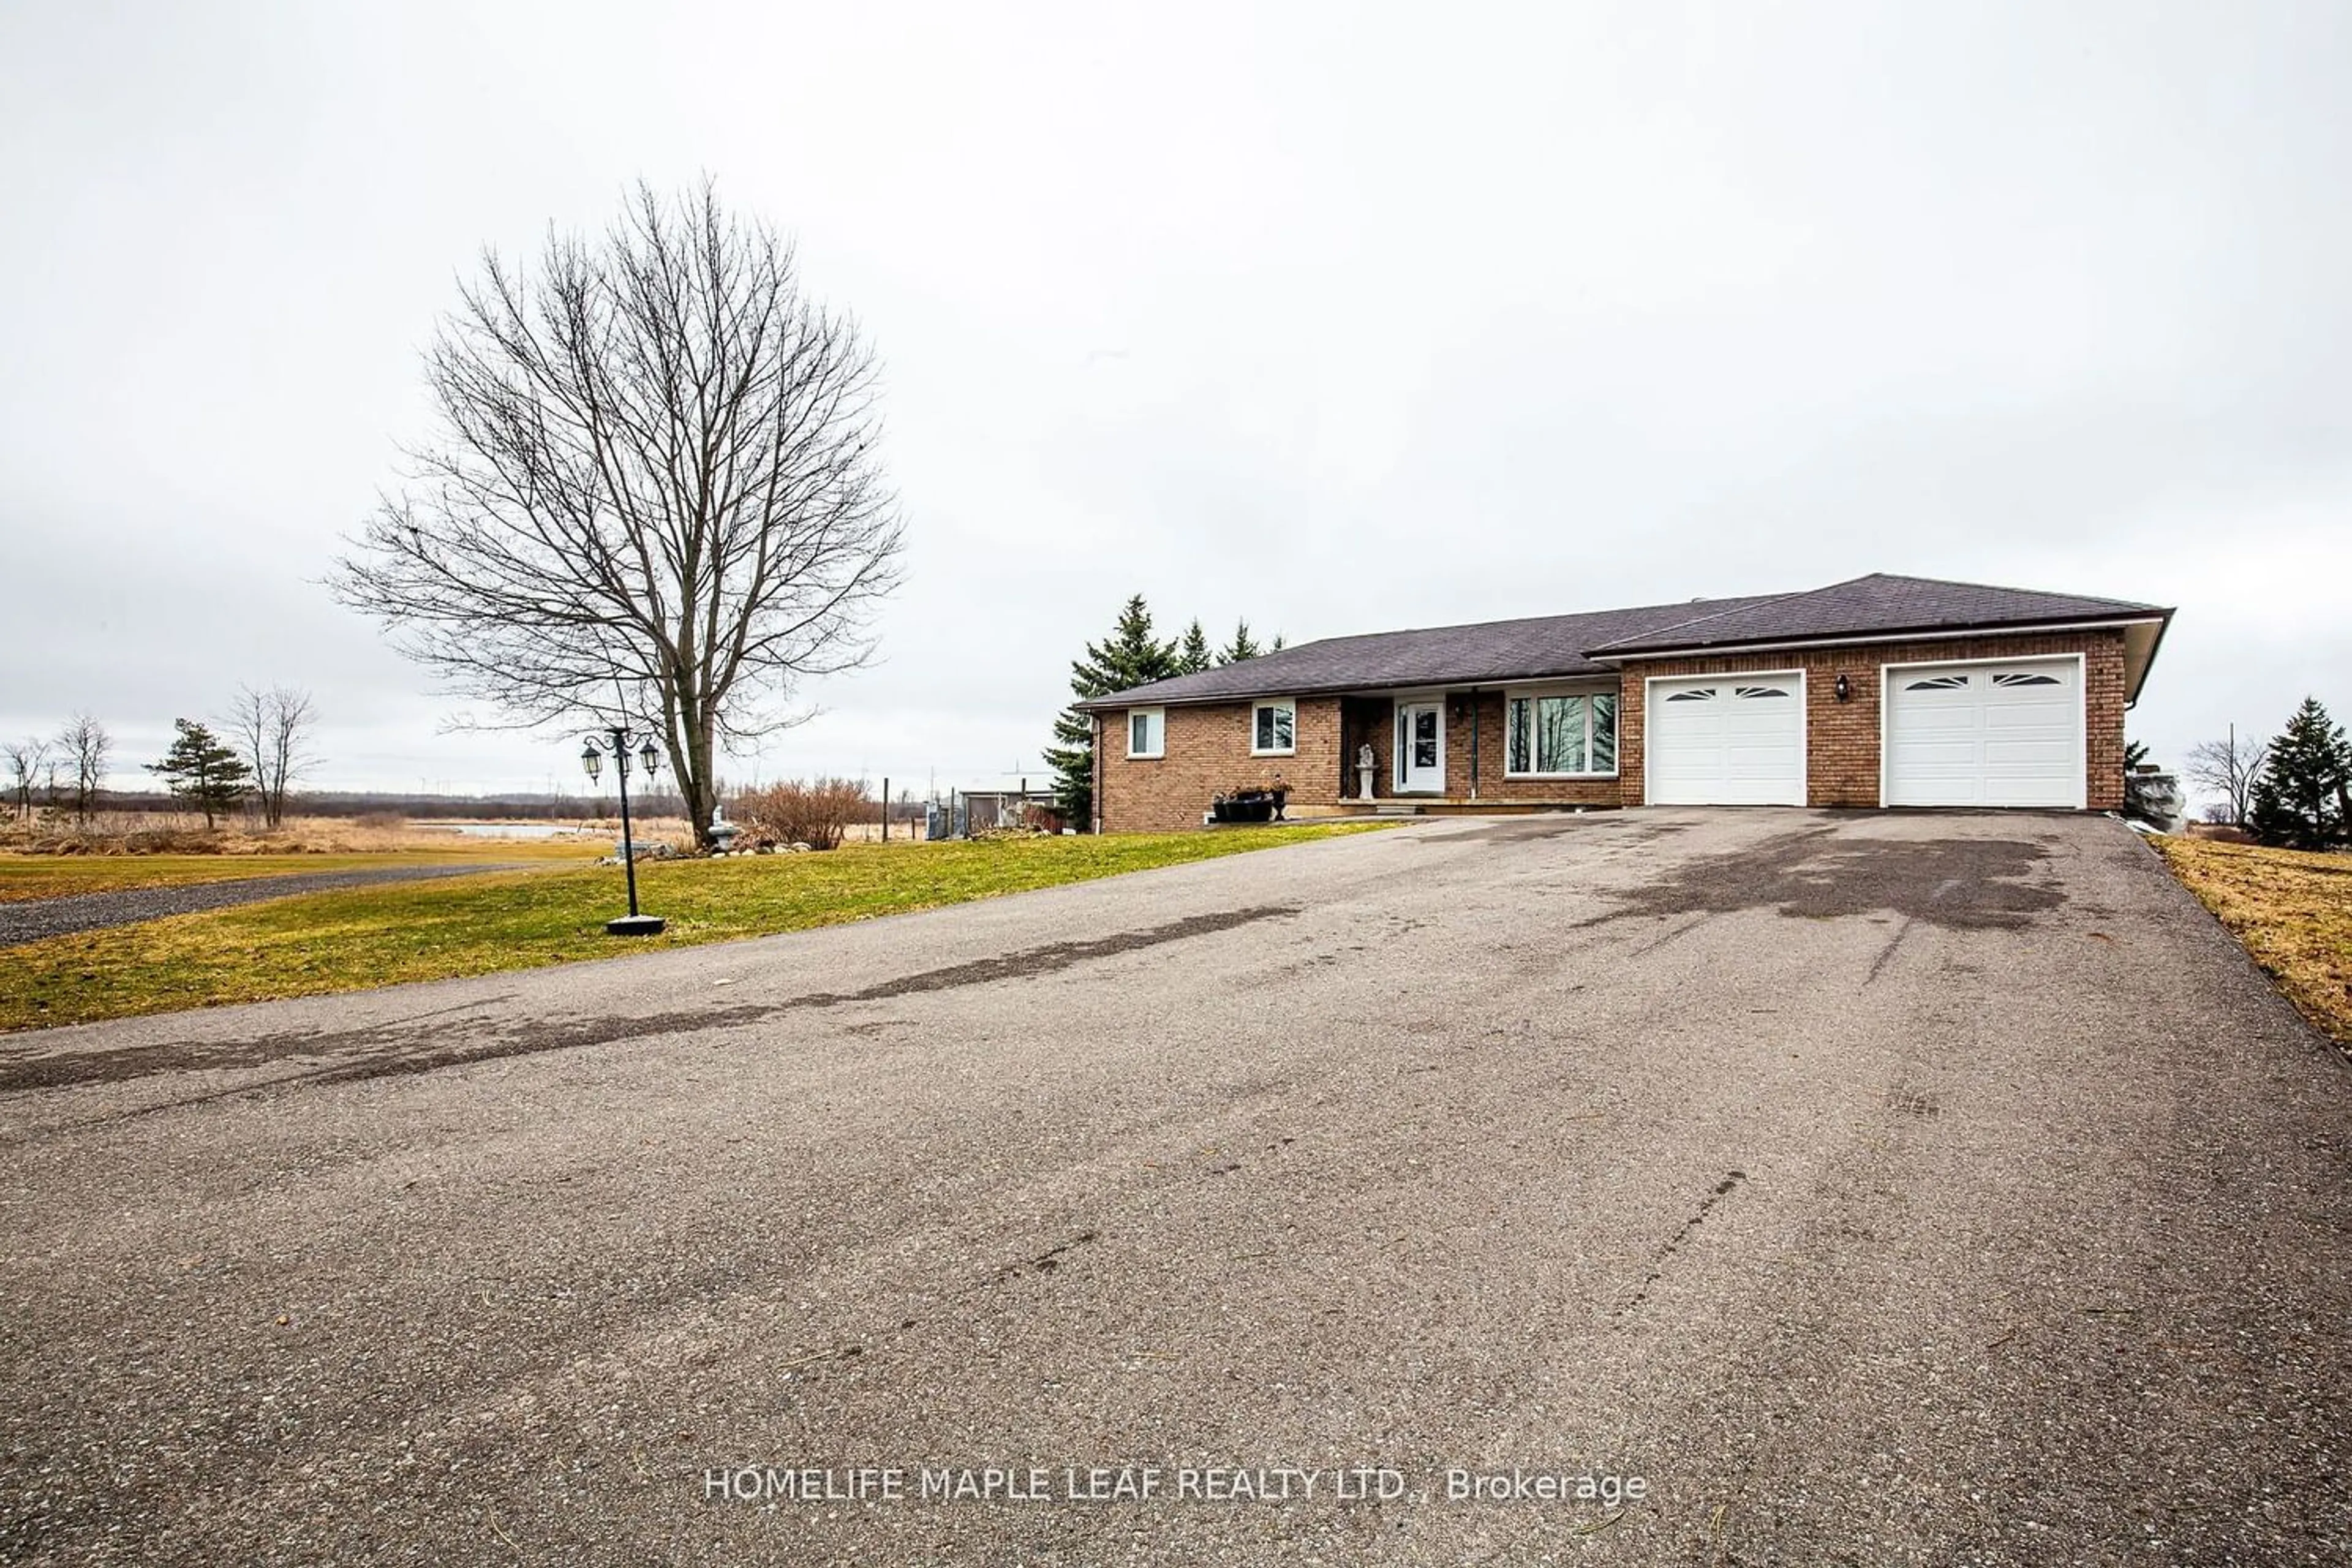 Frontside or backside of a home for 157240 Highway 10, Melancthon Ontario L9V 2G7